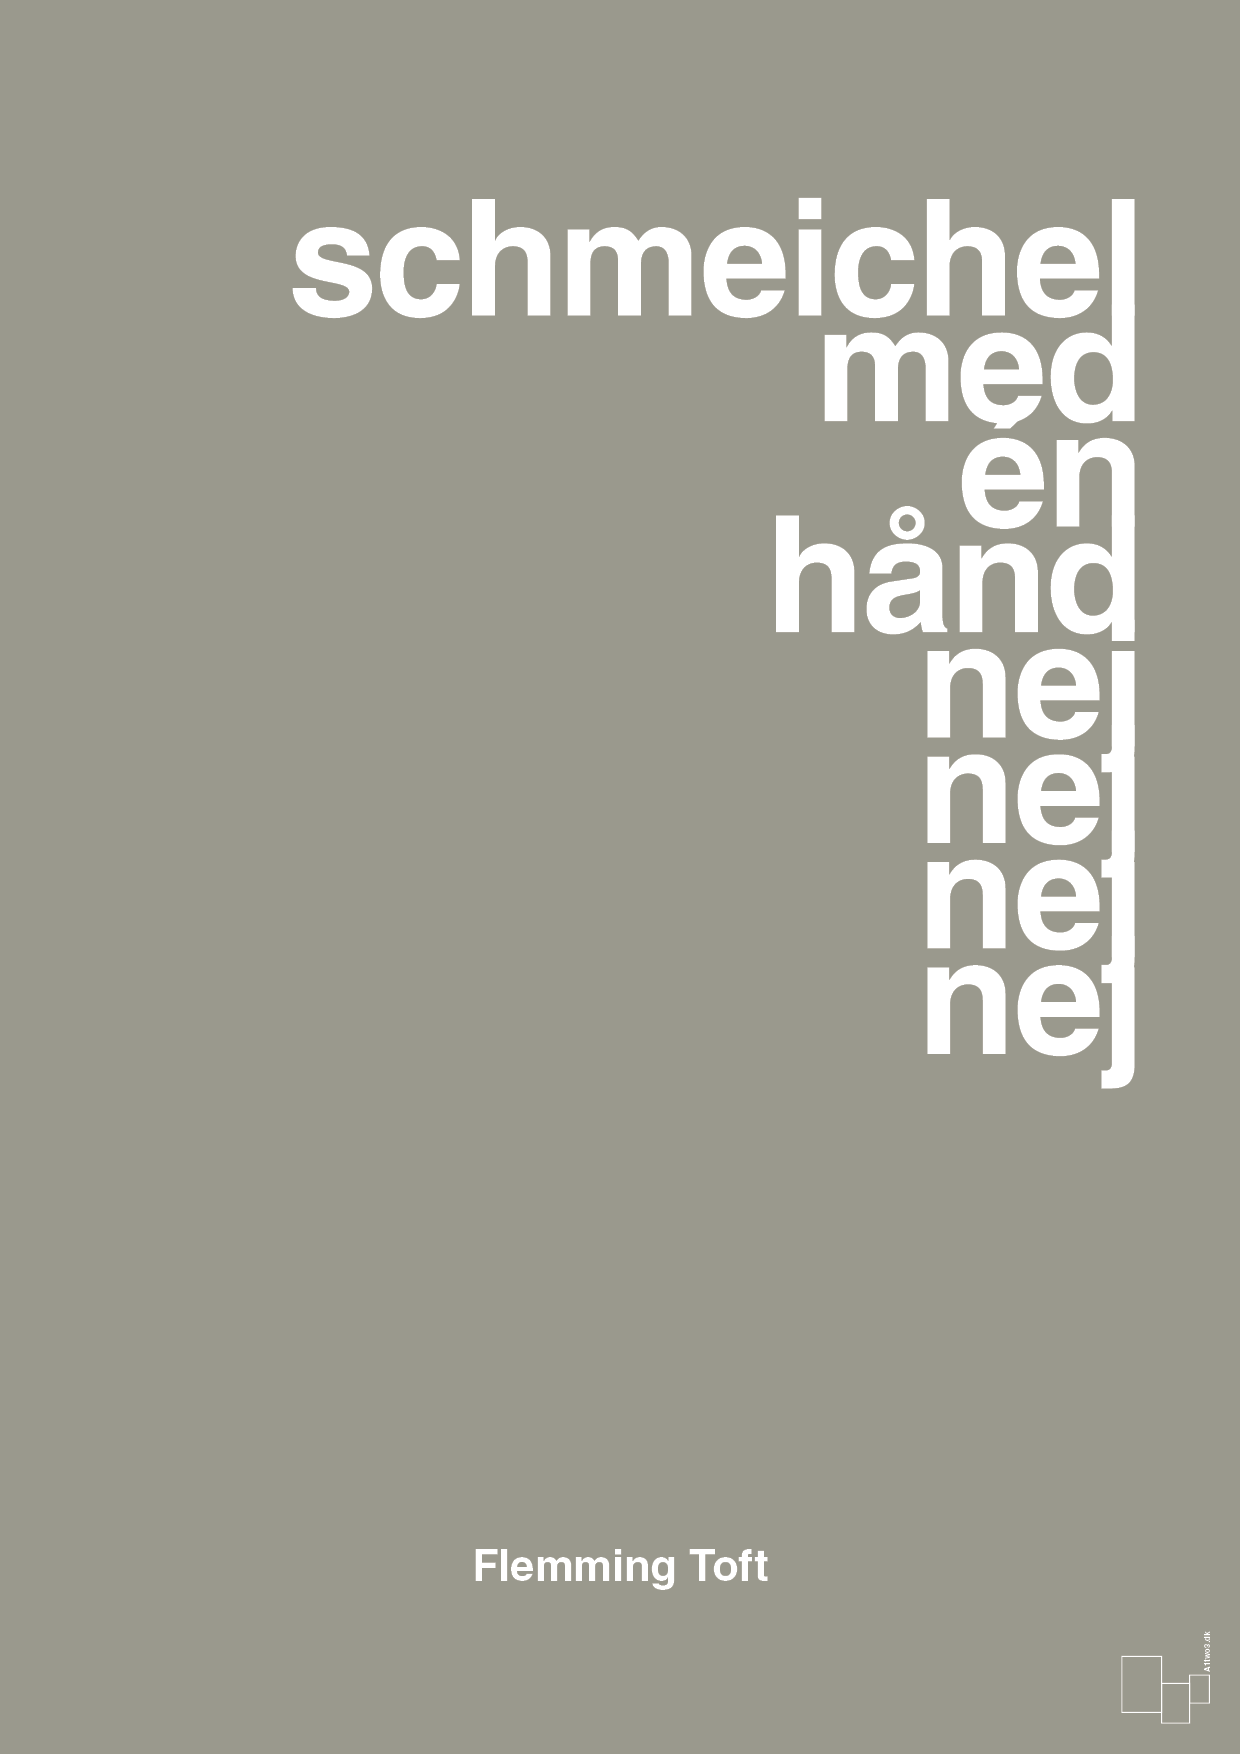 schmeichel med én hånd nej nej nej nej - Plakat med Citater i Battleship Gray